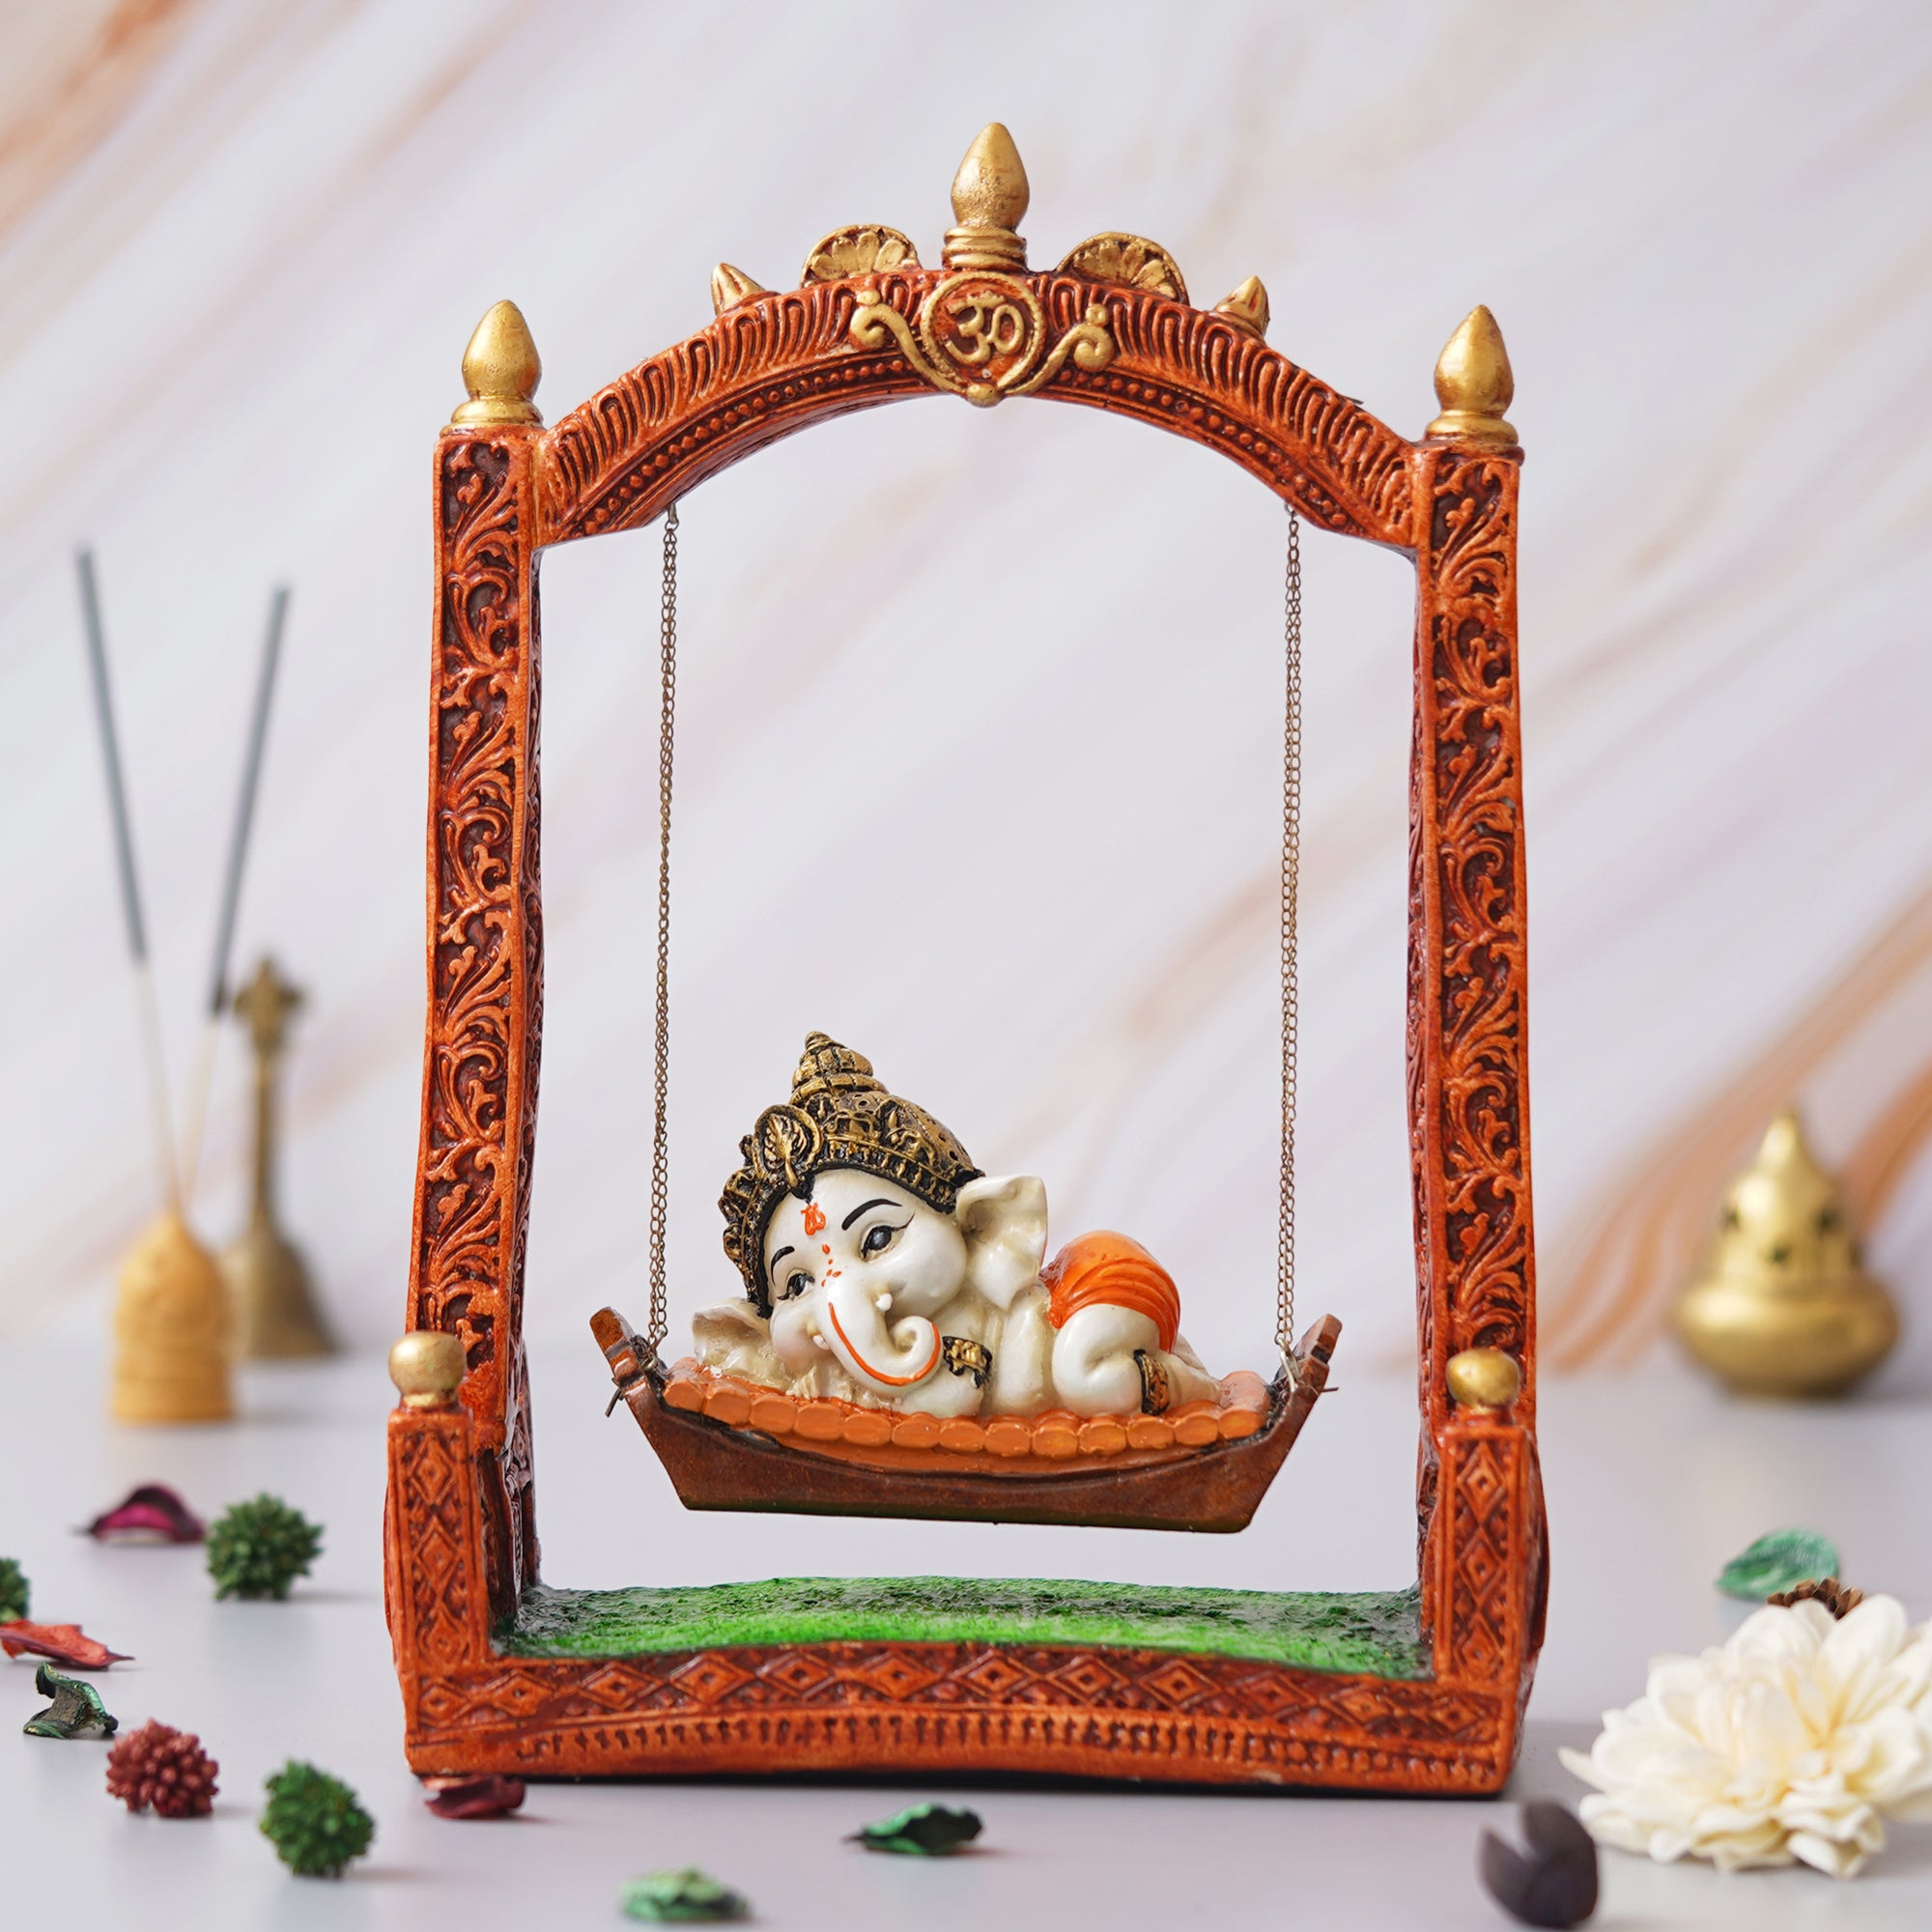 eCraftIndia Multicolor Polyresin Lord Ganesha Idol Resting On A Swing Decorative Showpiece 4